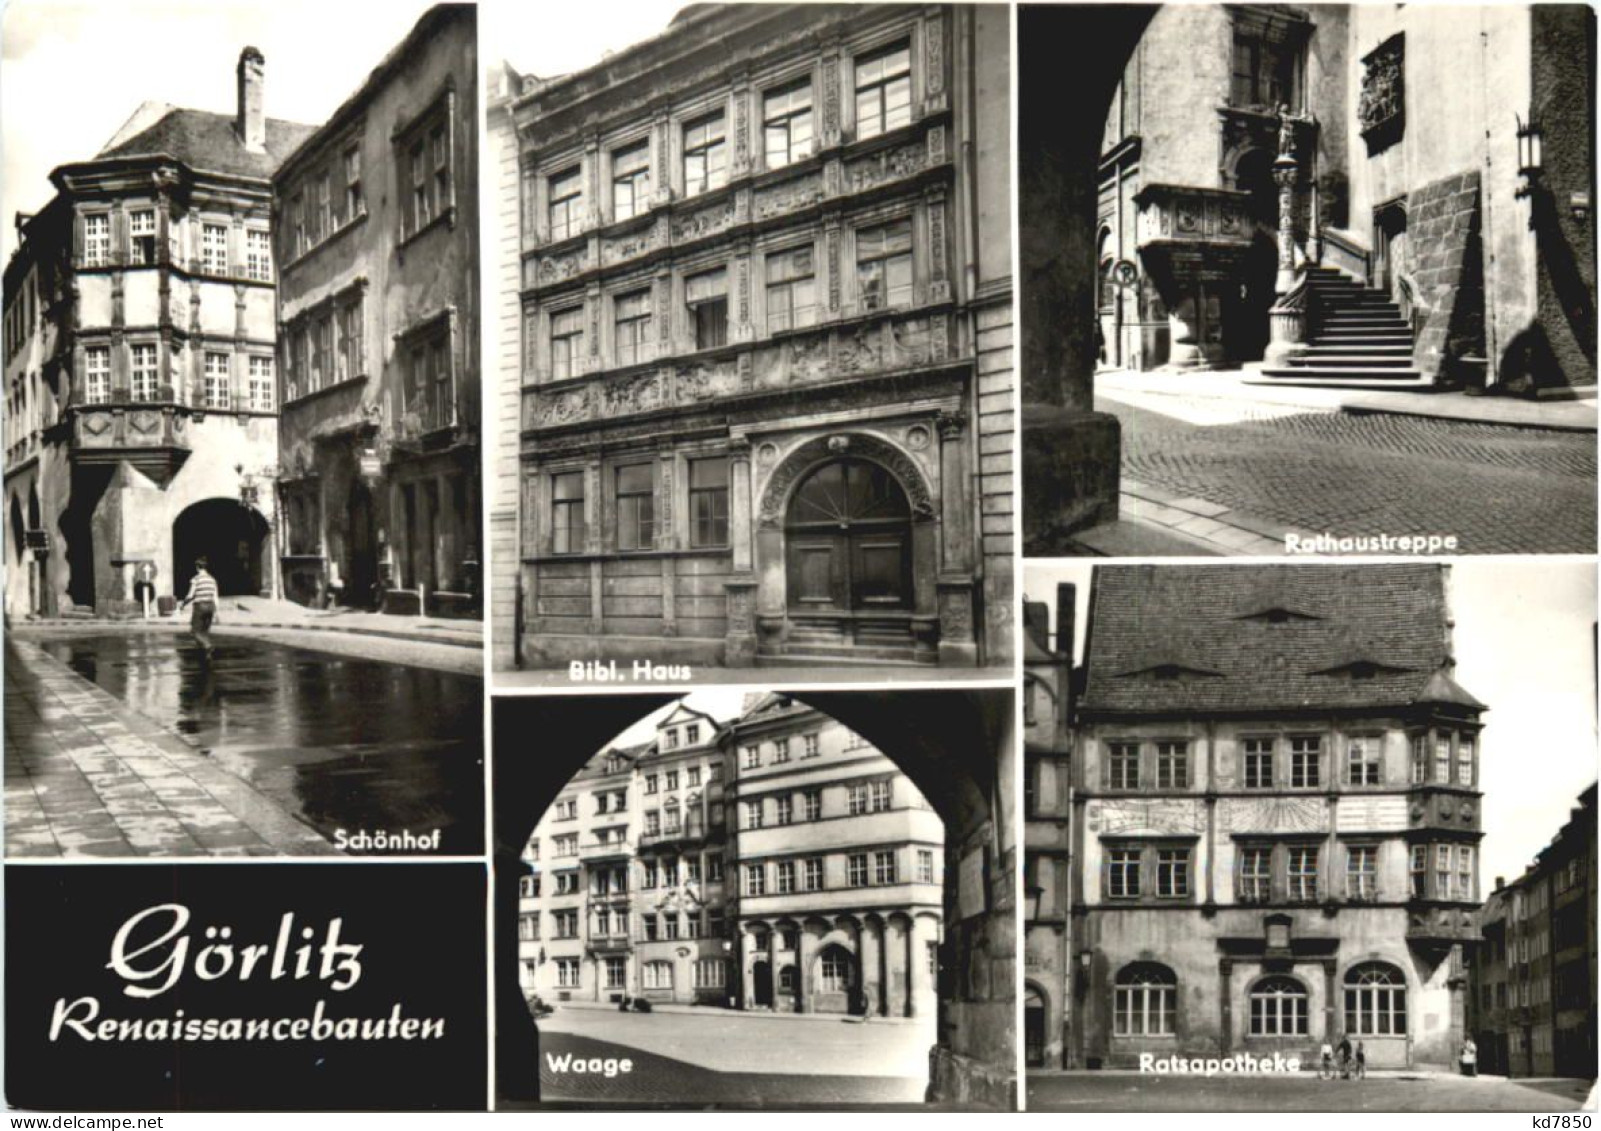 Göritz - Renaissancebauten - Goerlitz